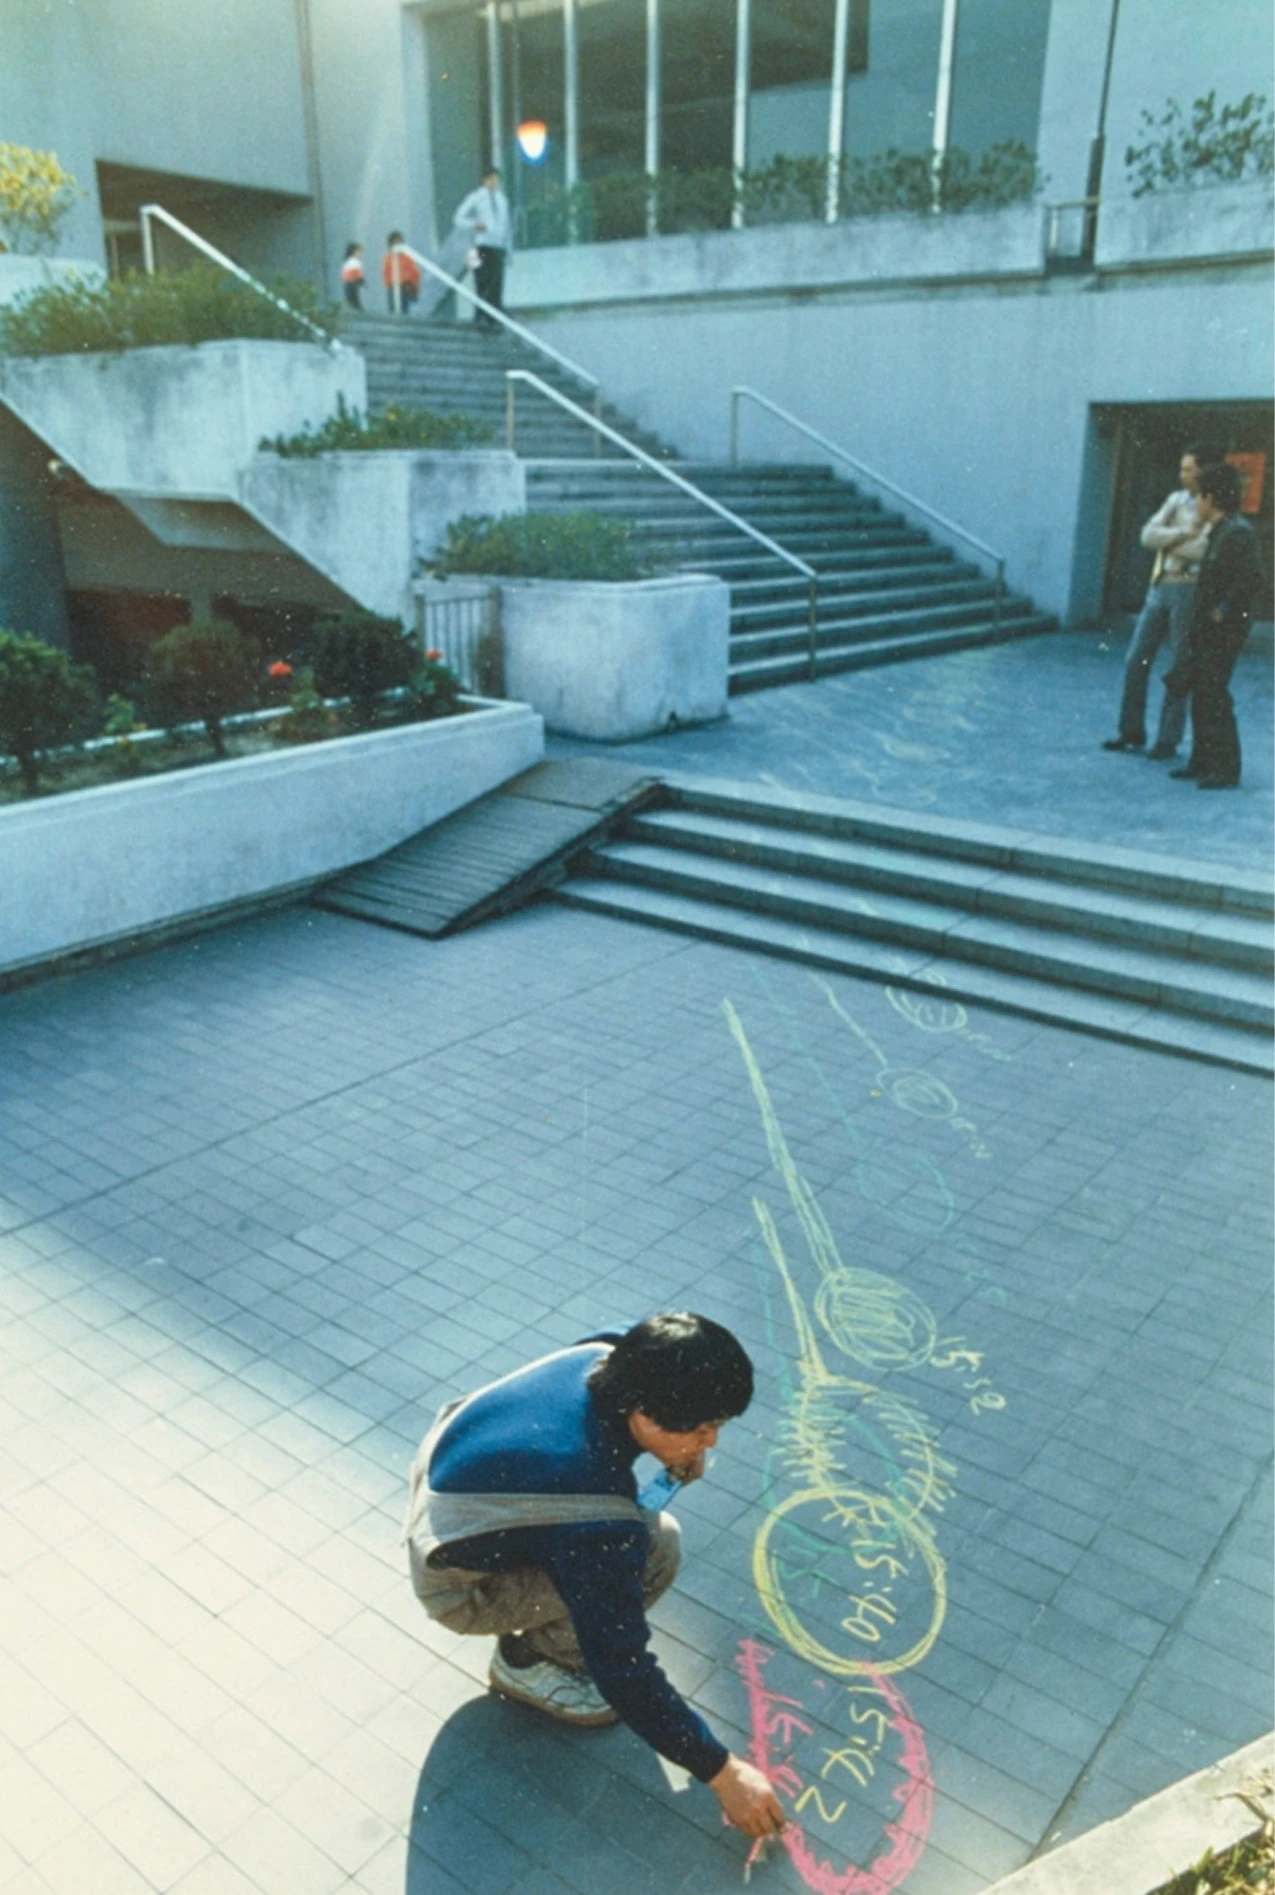 李銘盛，《非繪畫》行為表演藝術作品於台北市立美術館以及鐵道、山路上展演，1986；林宗興攝影-圖片